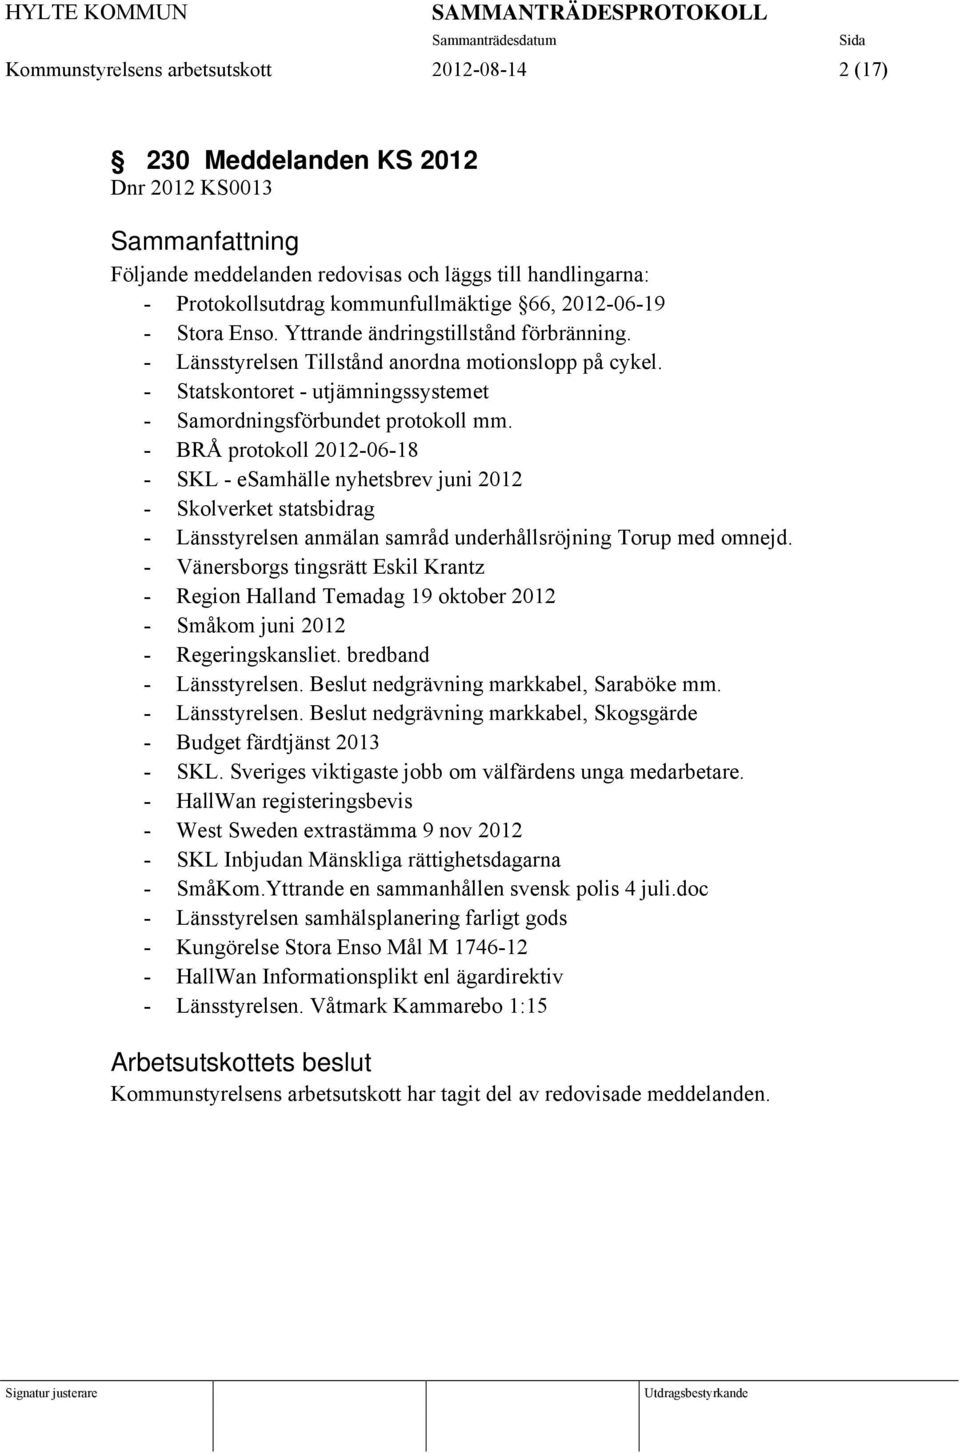 - BRÅ protokoll 2012-06-18 - SKL - esamhälle nyhetsbrev juni 2012 - Skolverket statsbidrag - Länsstyrelsen anmälan samråd underhållsröjning Torup med omnejd.